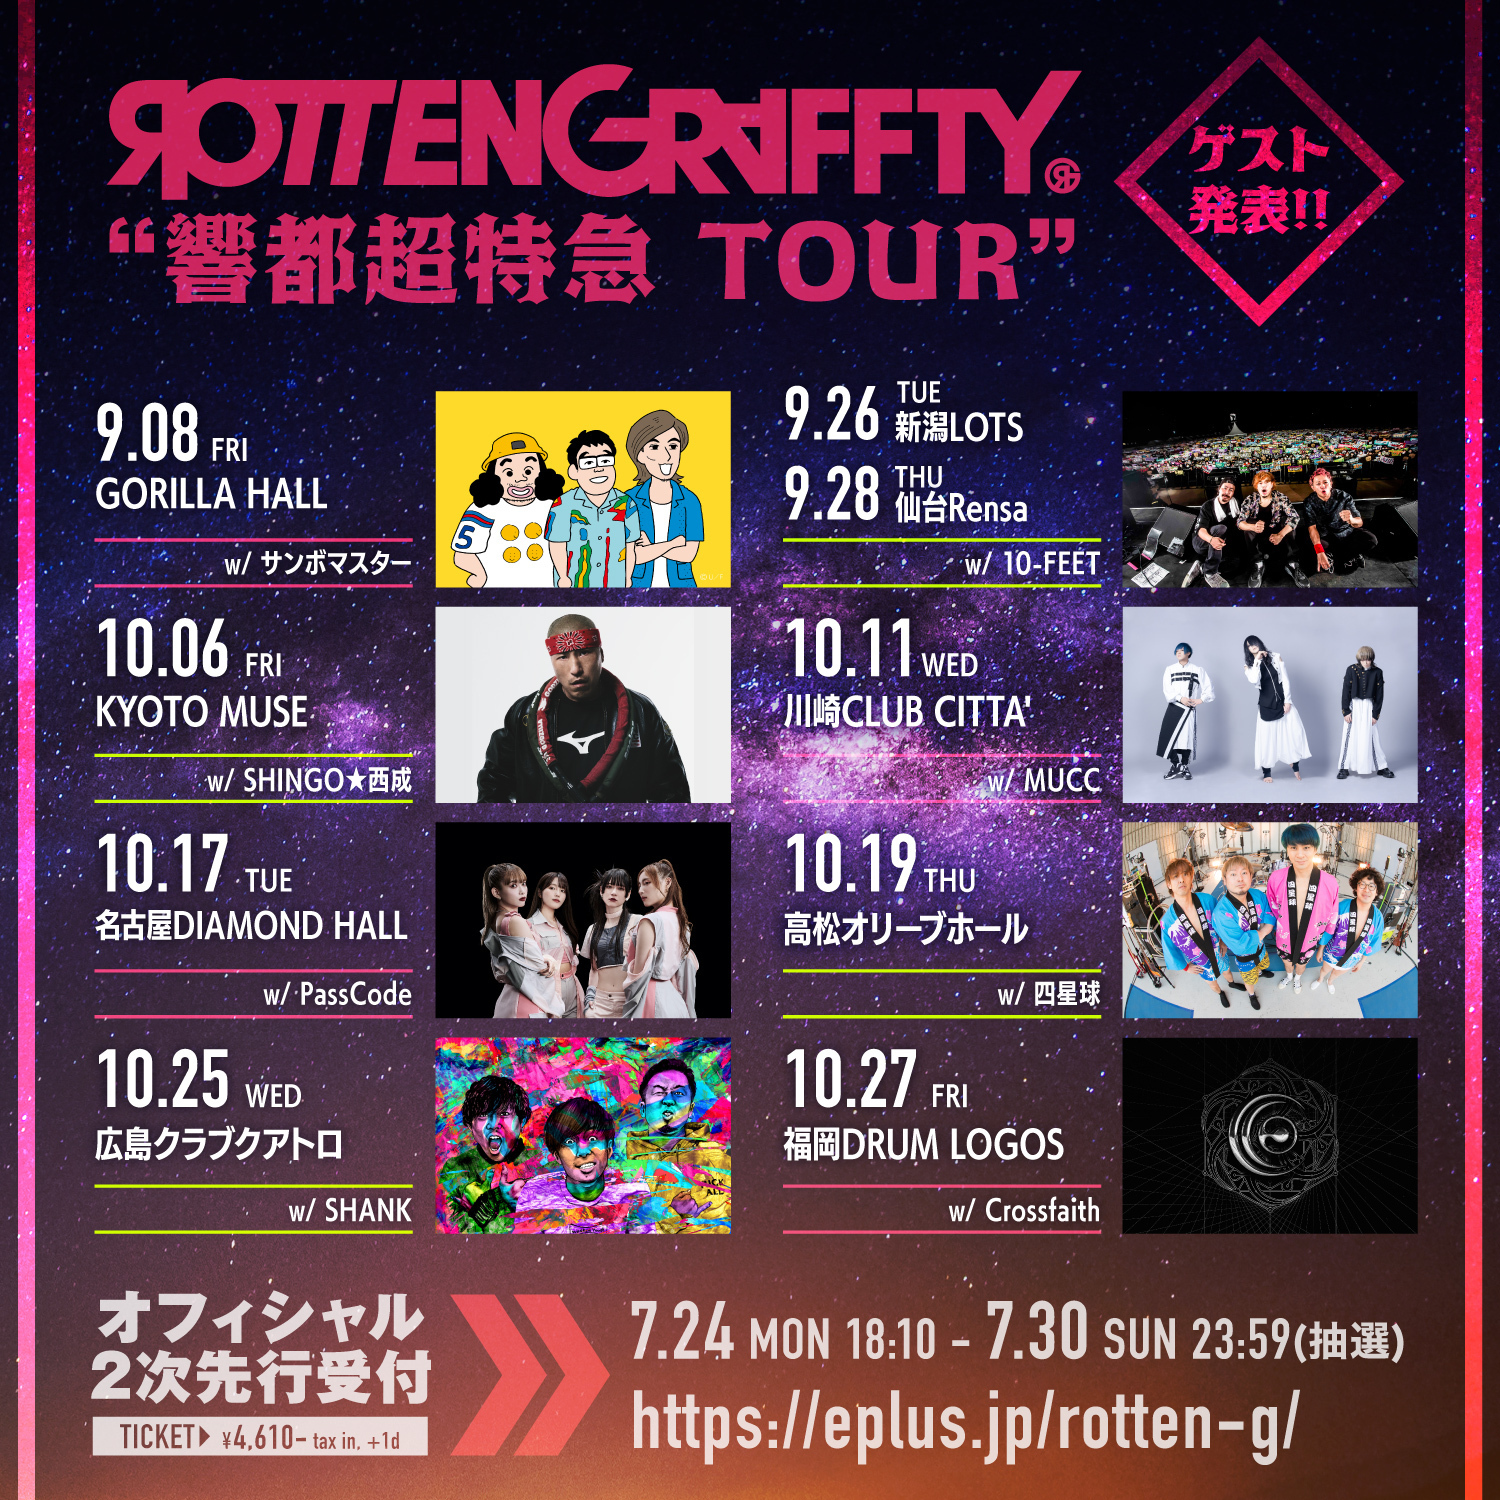 9.28(木) ROTTENGRAFFTY ”響都超特急 TOUR” 仙台Rensa | 10-FEET 